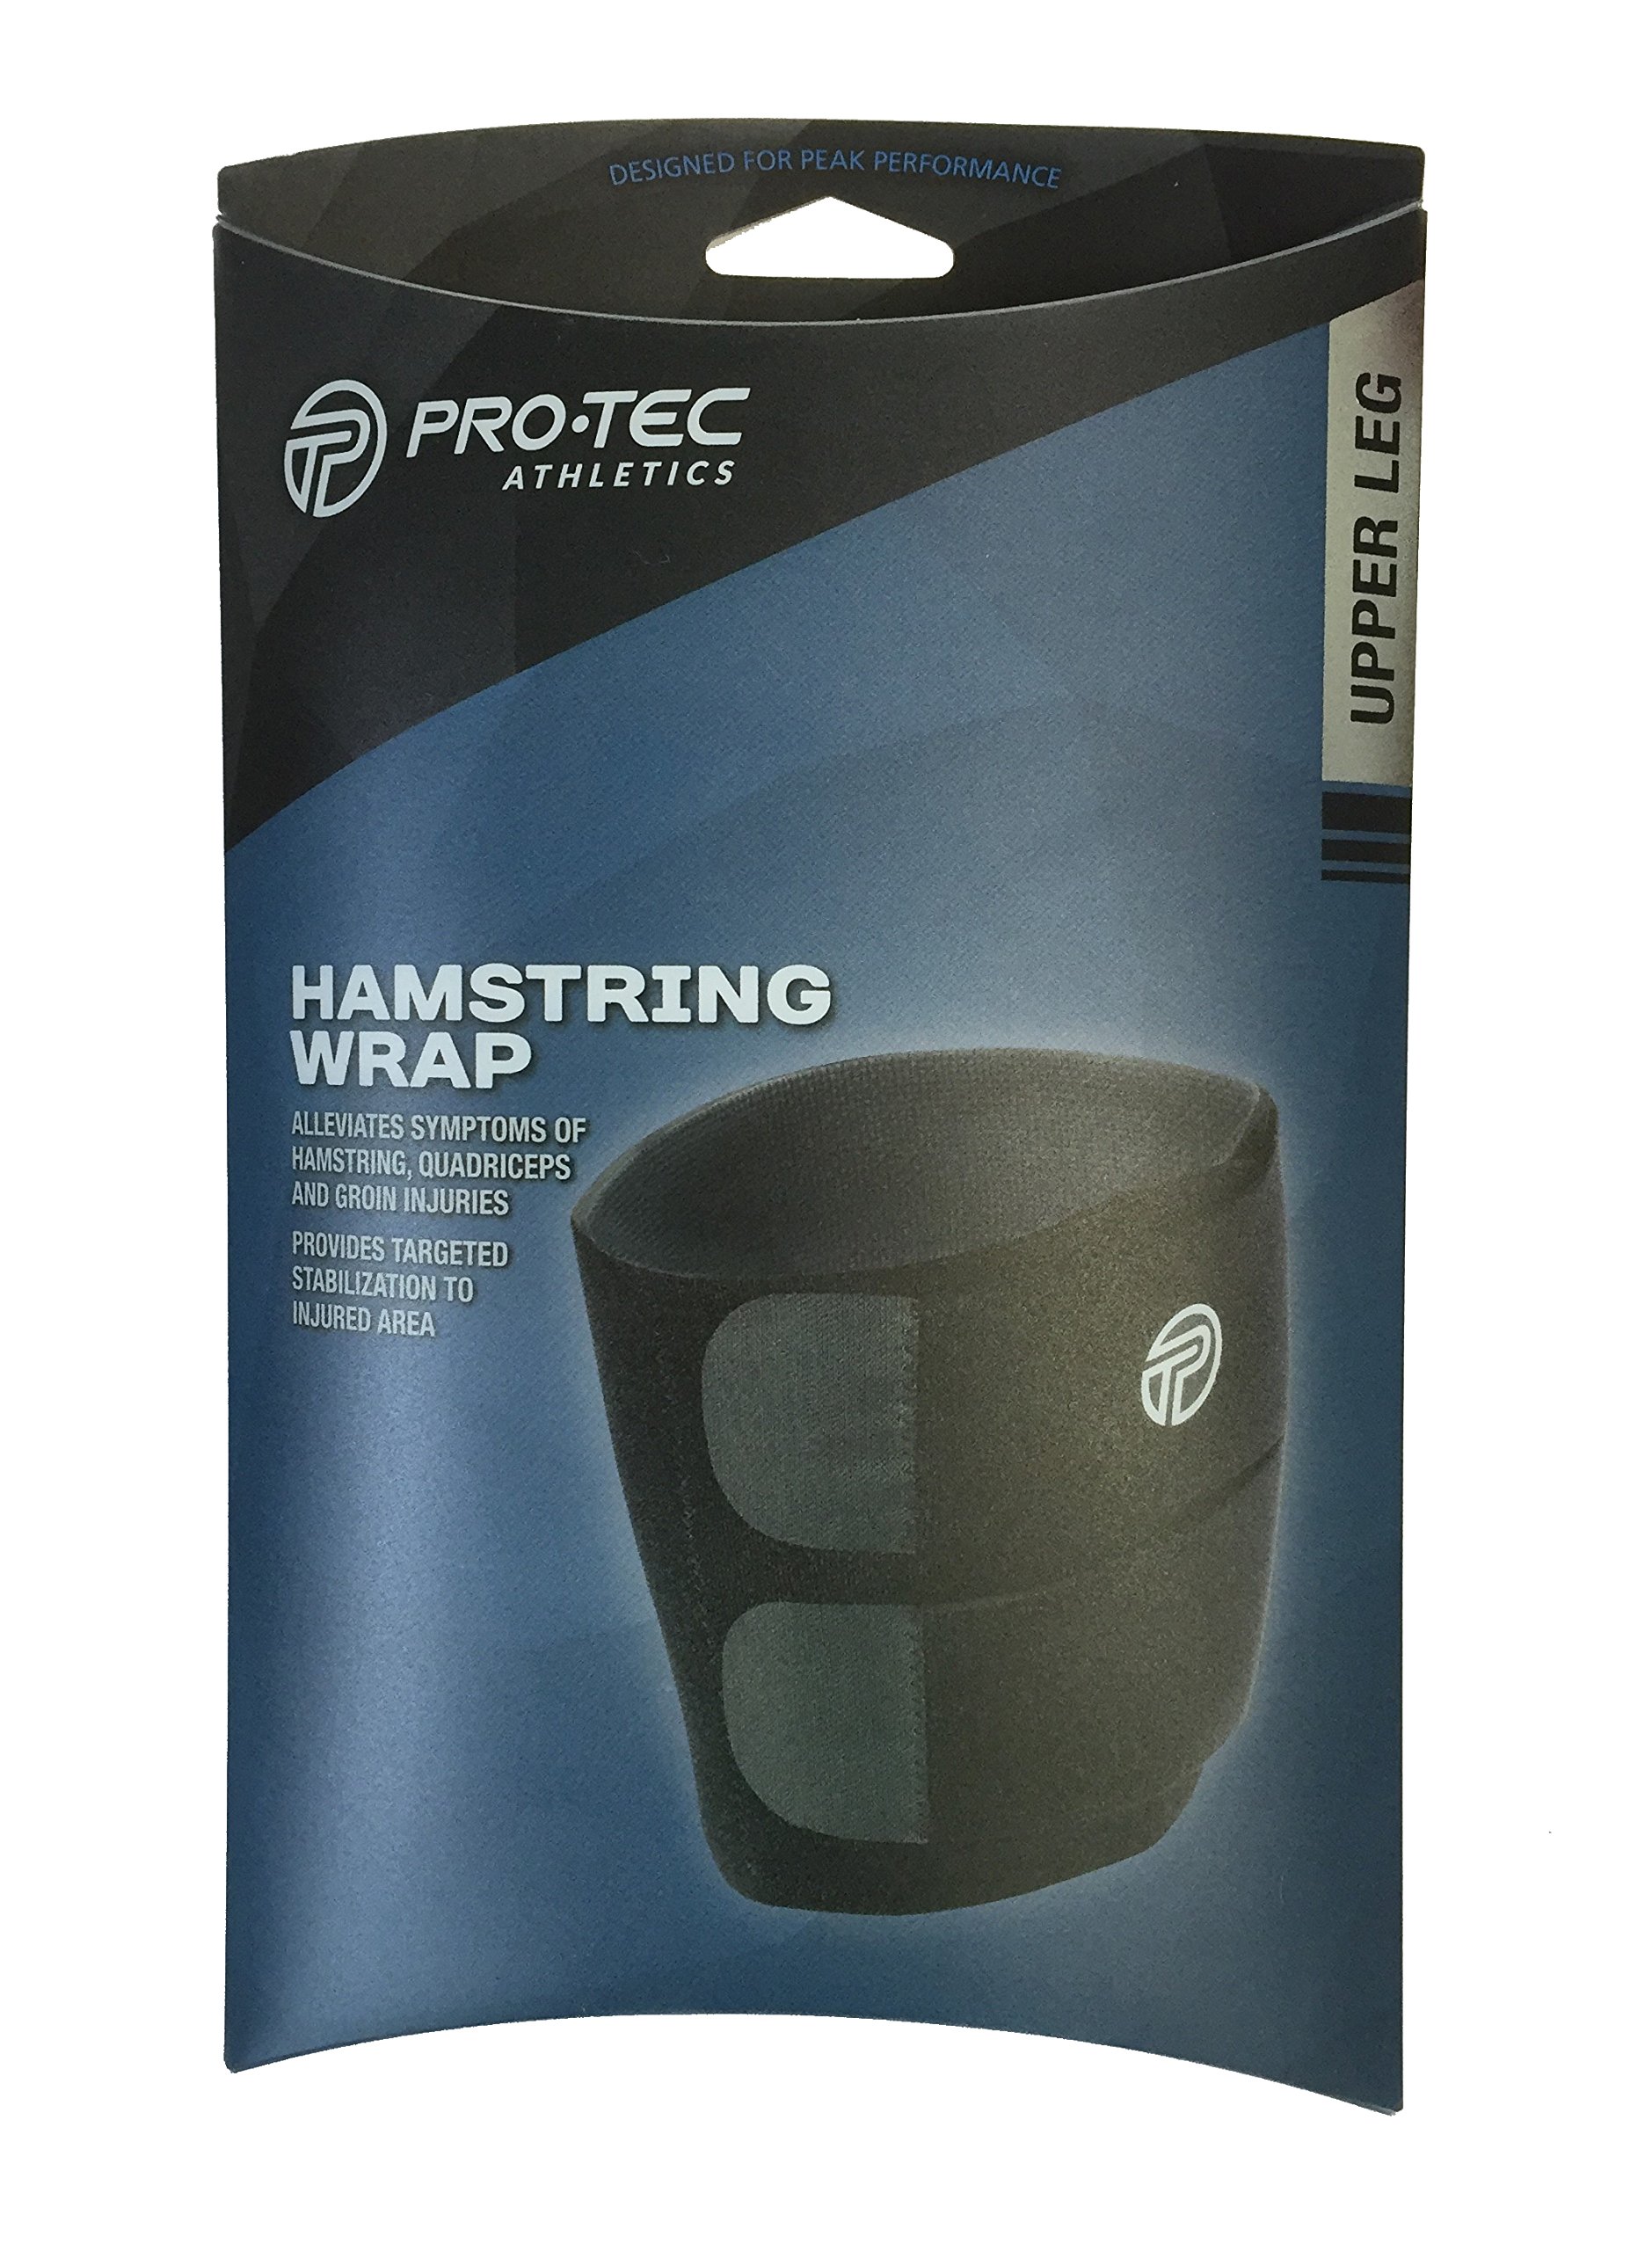 Pro-Tec Hamstring Compression Wrap